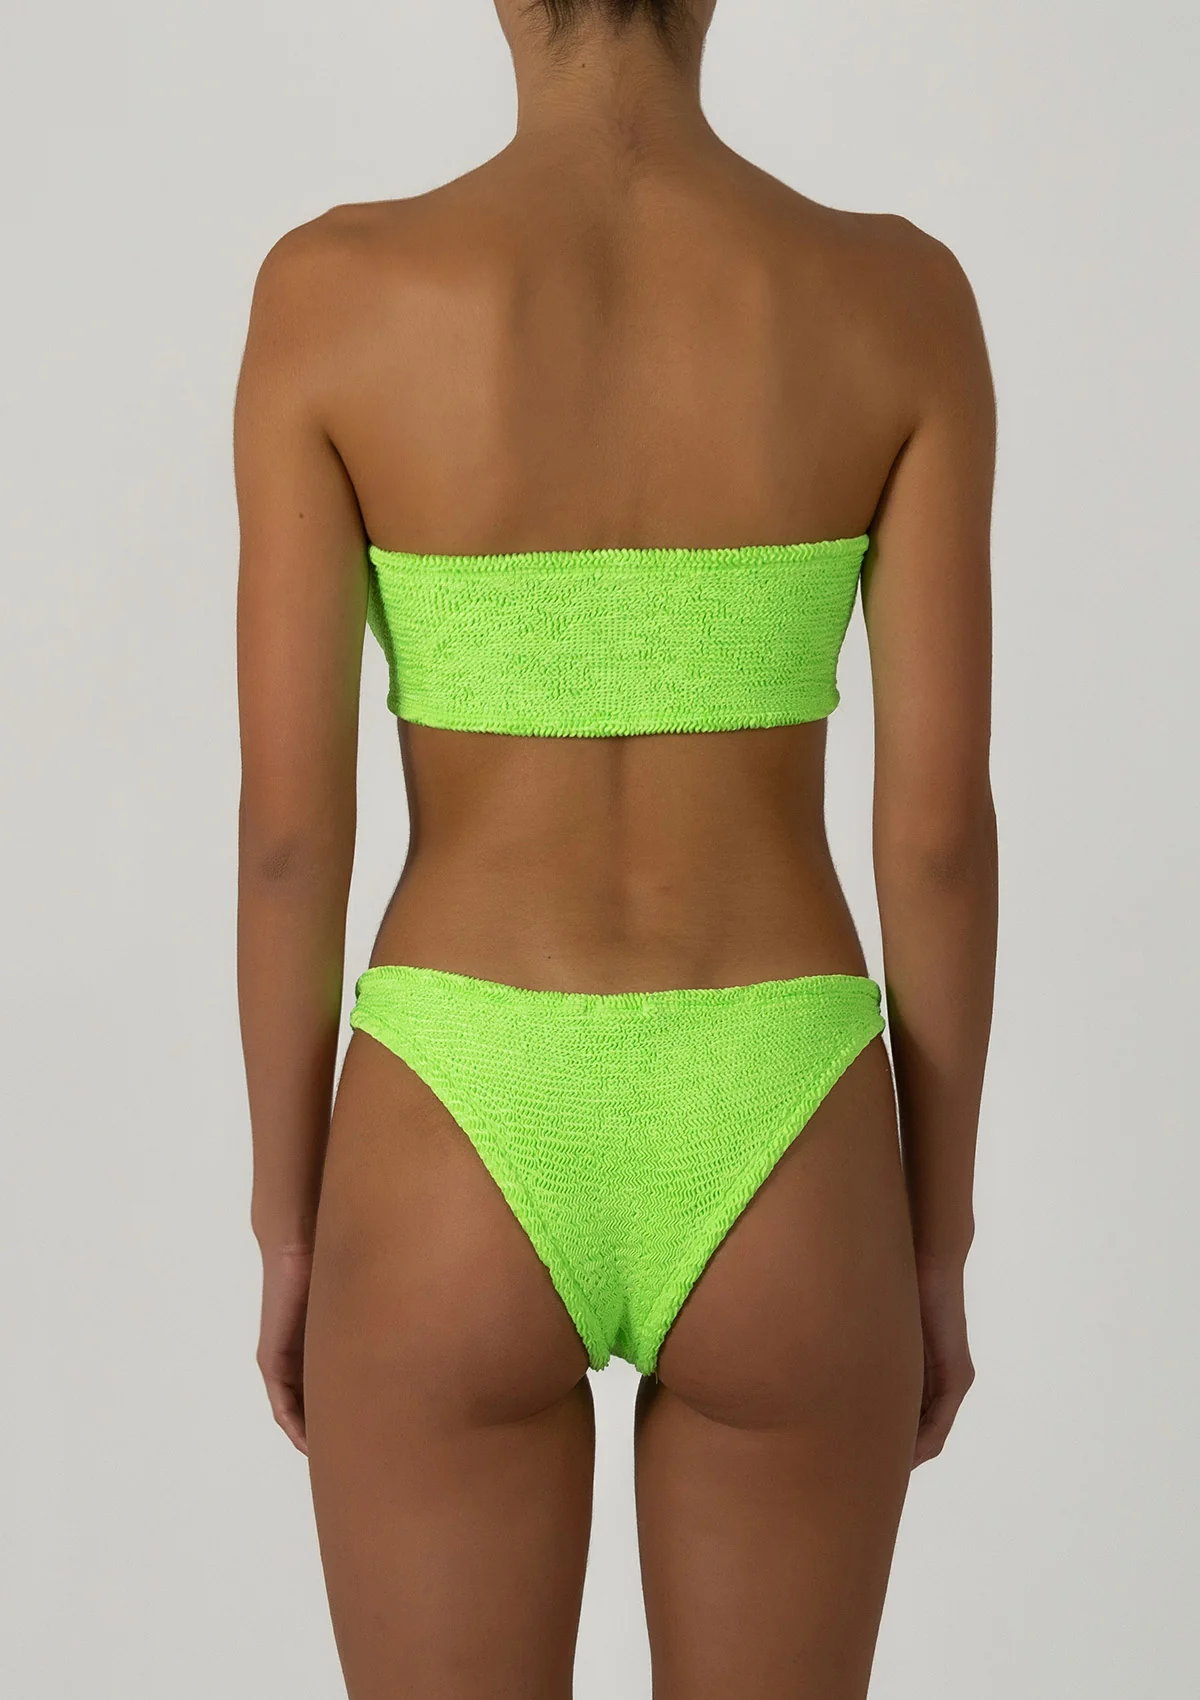 Paramidonna Strapless Bikini Neon Green